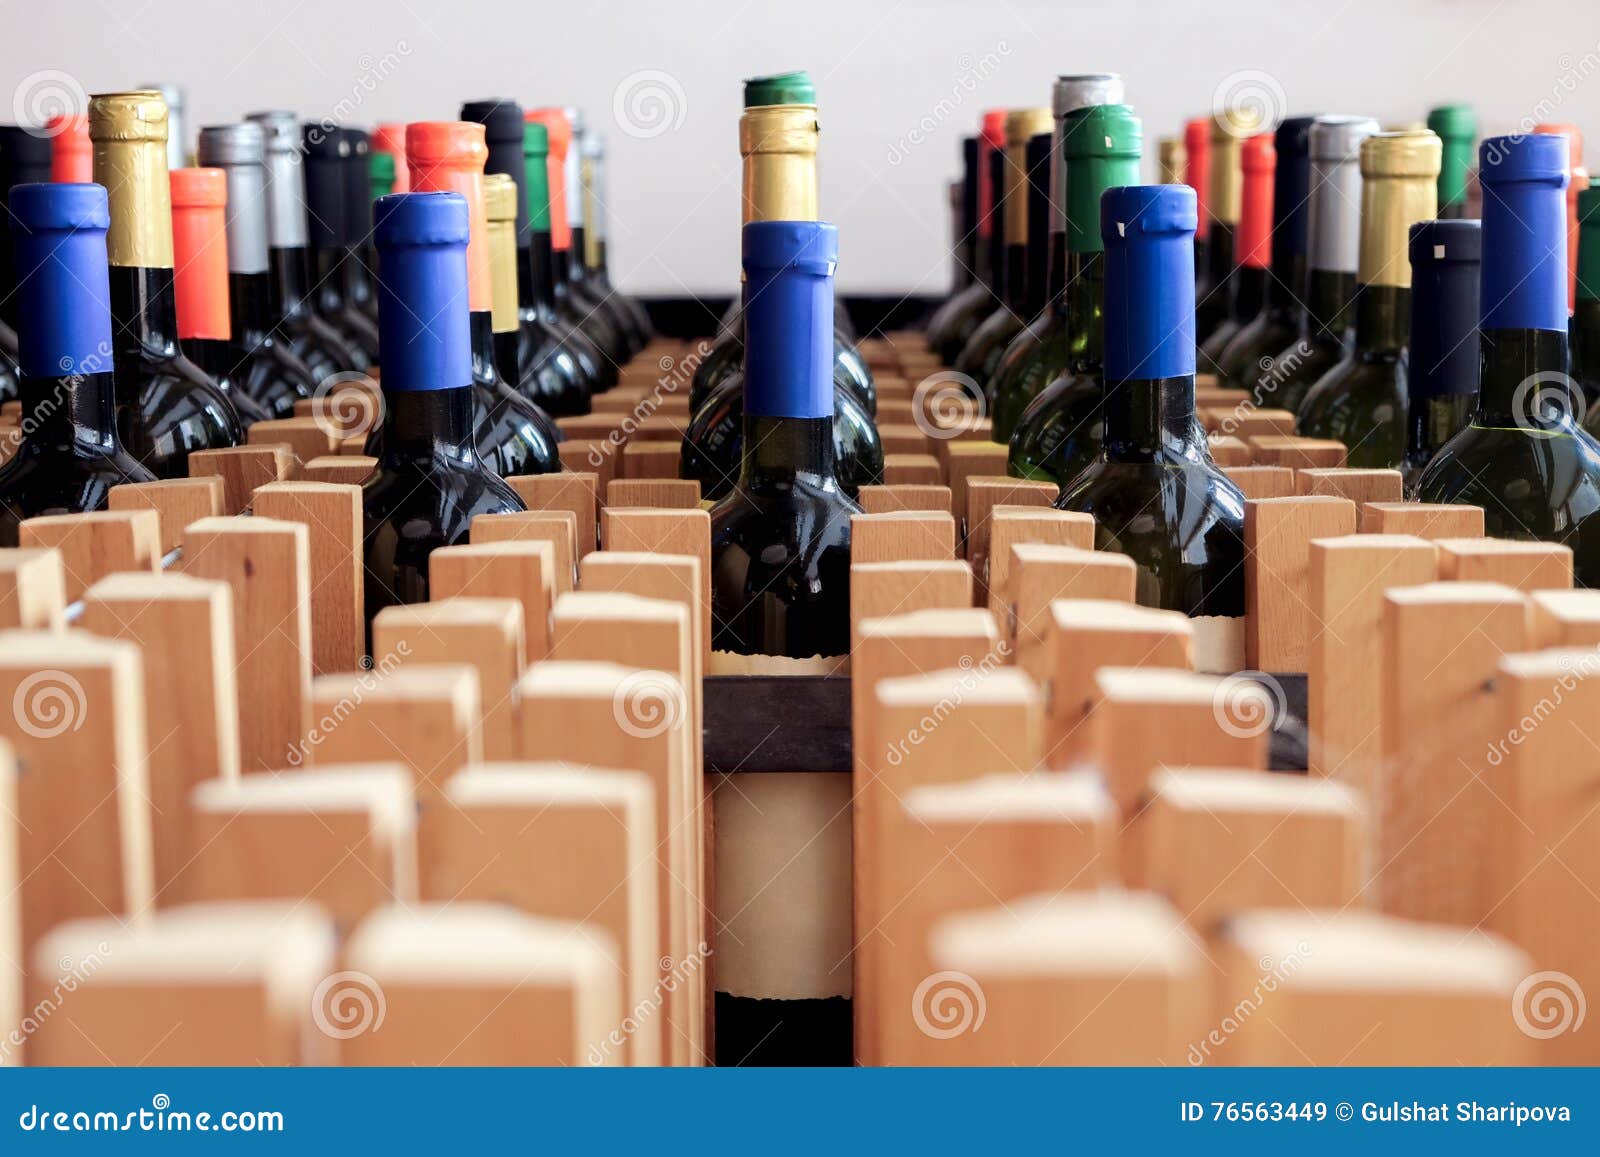 Aufkleber Flaschen Kostenlos - Wein Flaschen Aufkleber ...